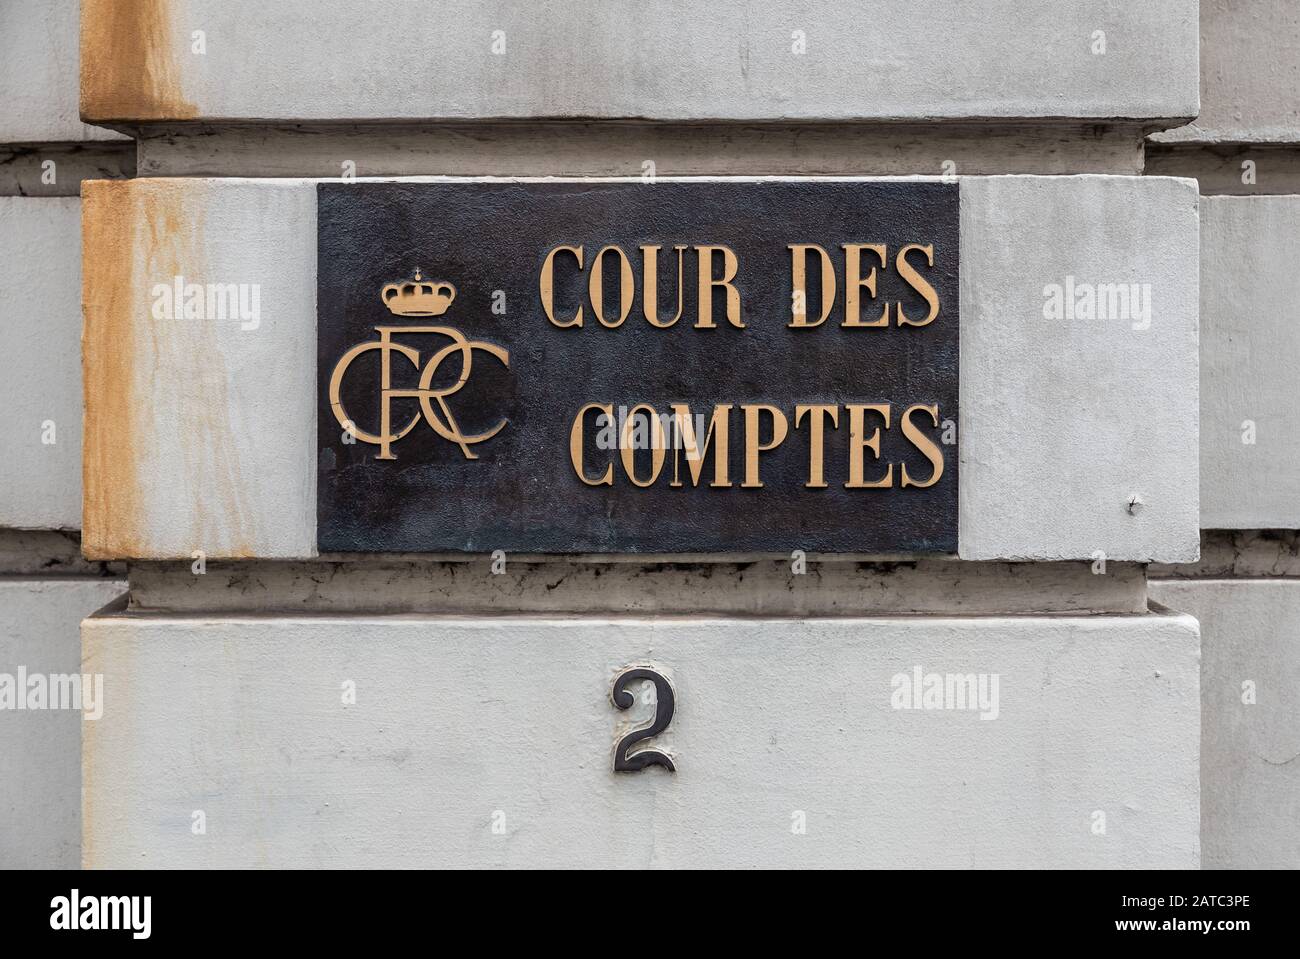 Bruxelles Vieille Ville, Bruxelles région de la capitale / Belgique - 12 20 2019: Signe d'or de la Cour de contrôle de la Belgique appelé Rekenoh - Cour des comptes Banque D'Images